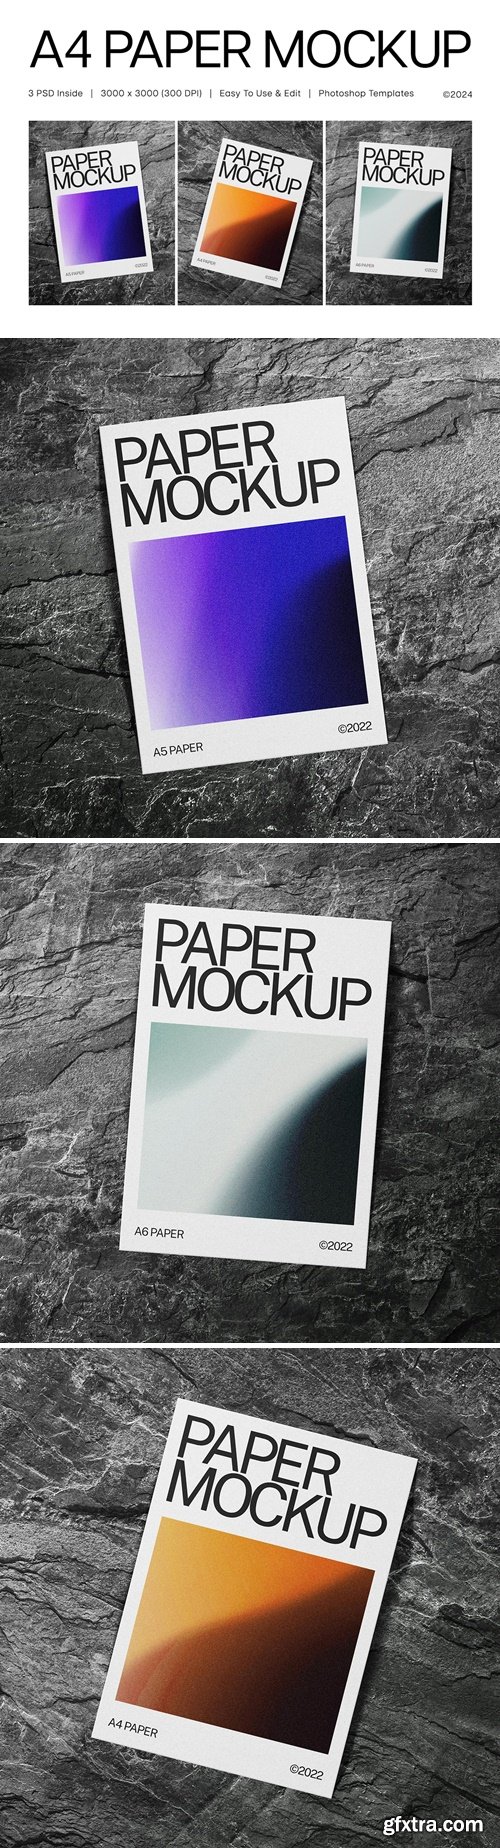 A4 Paper Mockup Collection DX3VSV8